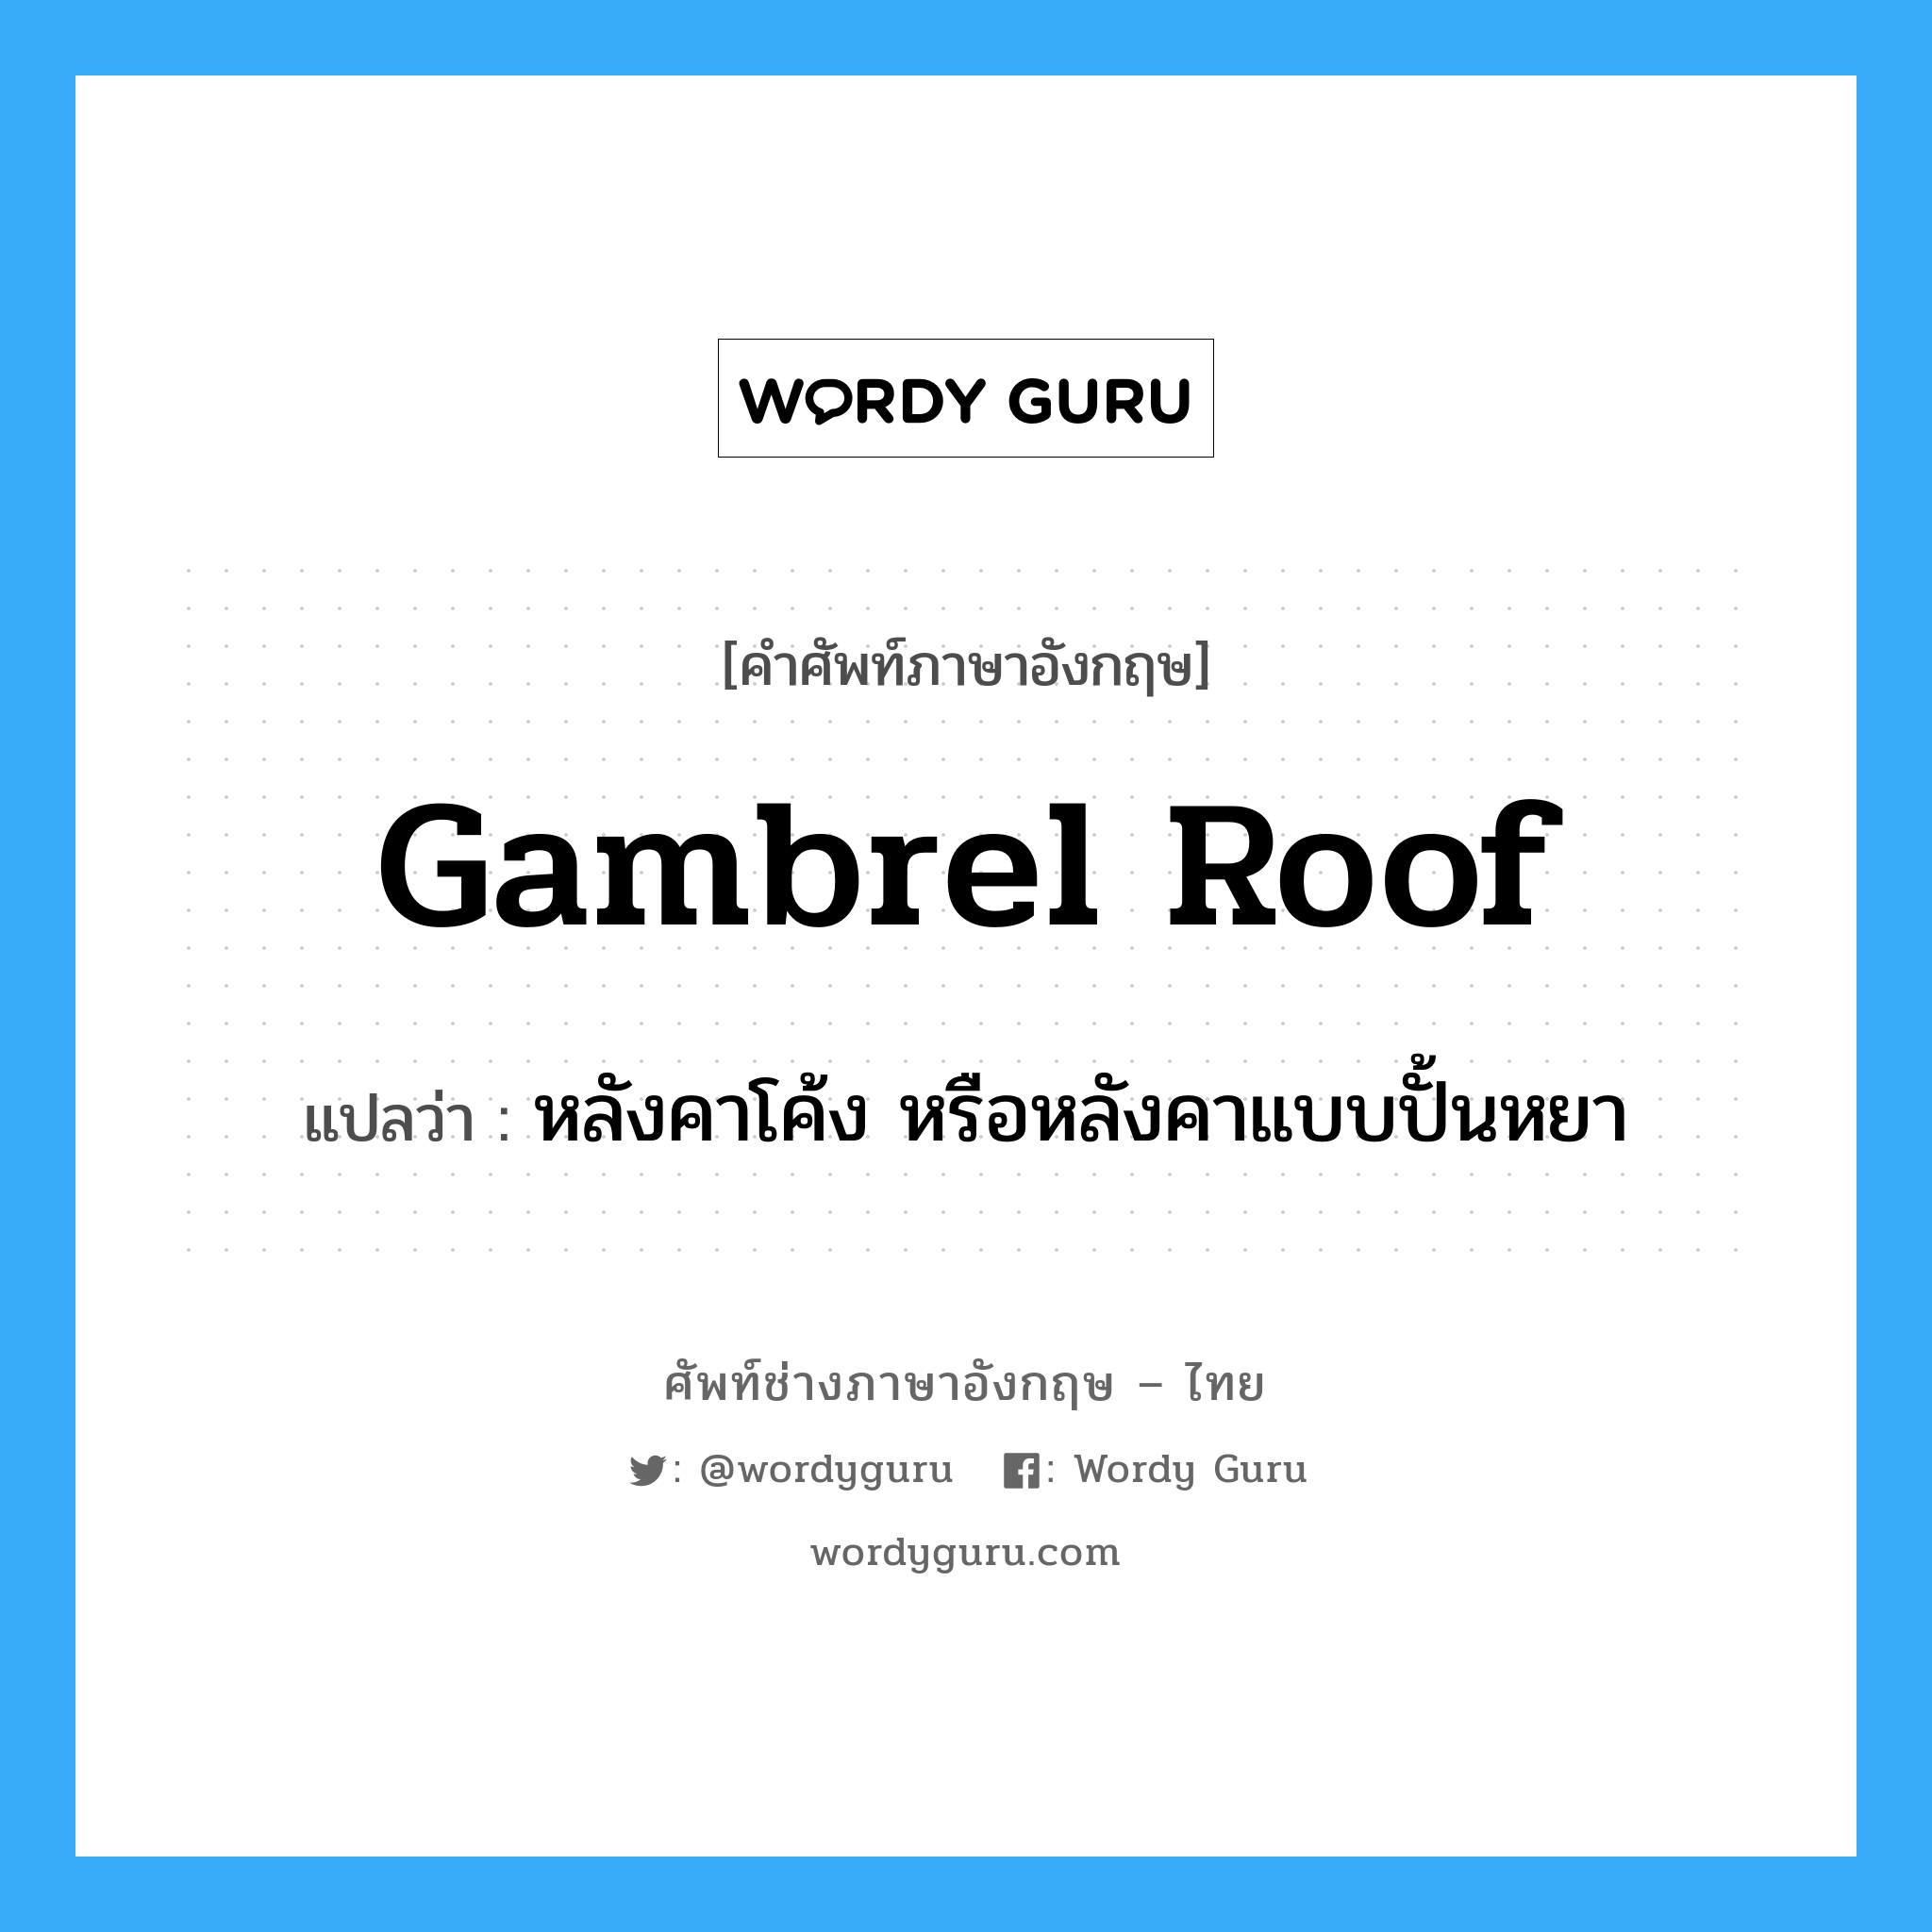 gambrel roof แปลว่า?, คำศัพท์ช่างภาษาอังกฤษ - ไทย gambrel roof คำศัพท์ภาษาอังกฤษ gambrel roof แปลว่า หลังคาโค้ง หรือหลังคาแบบปั้นหยา